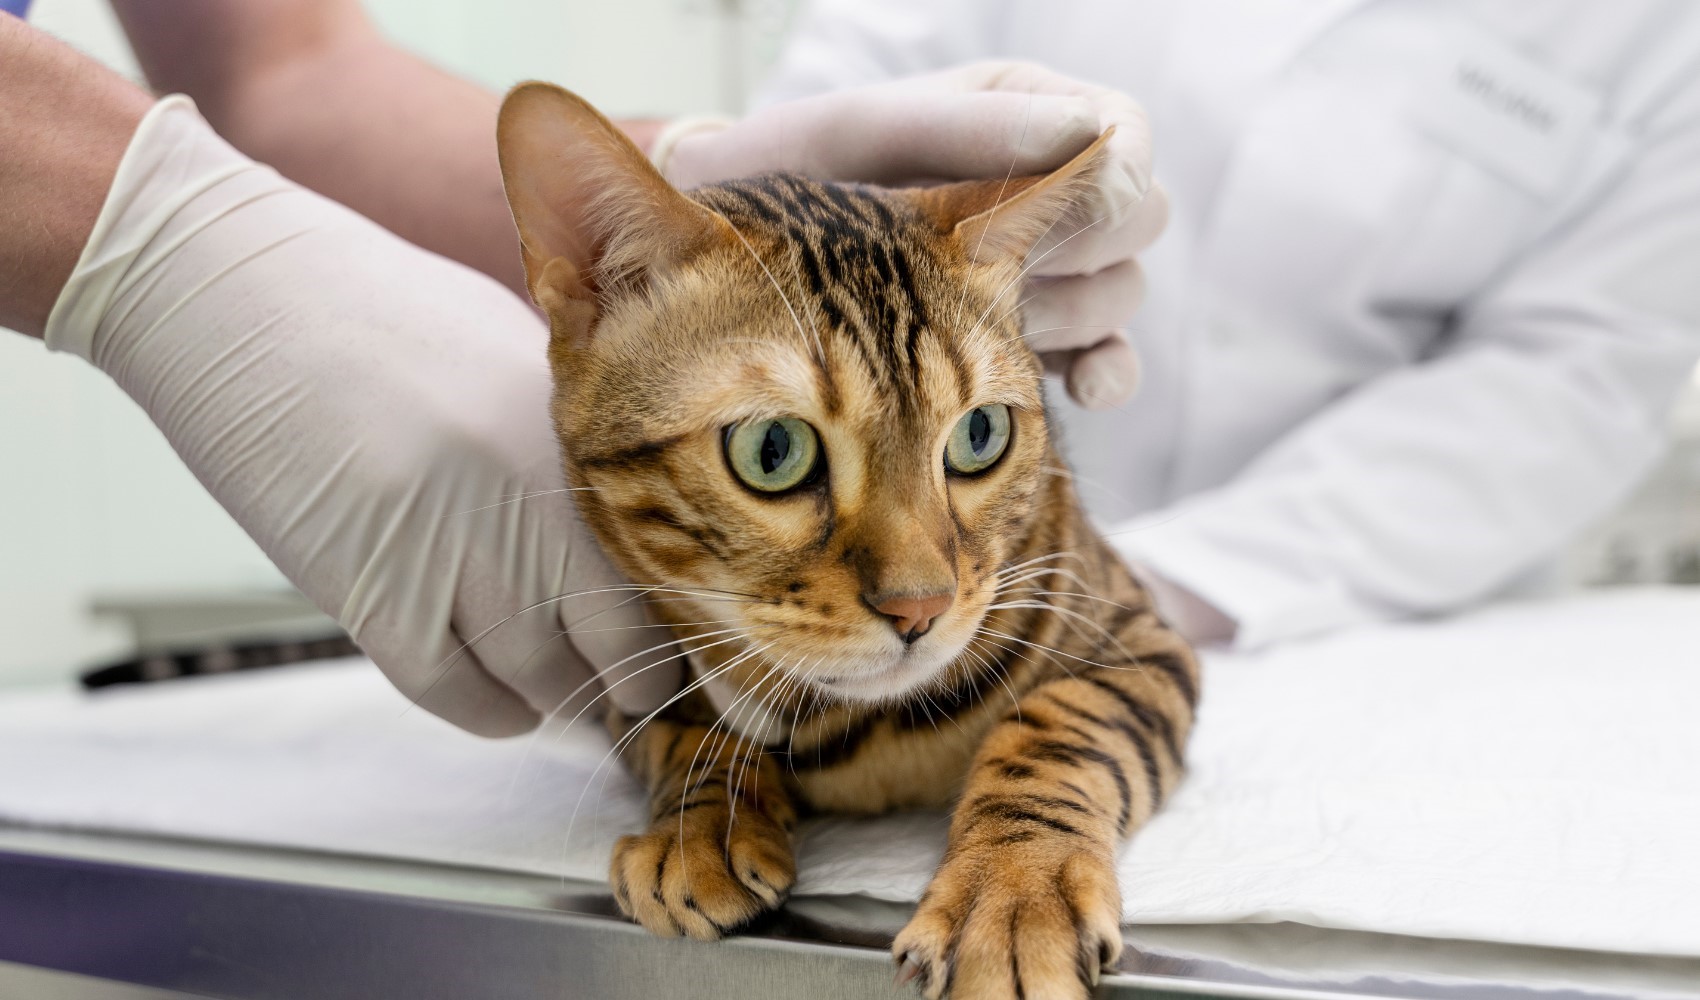 Veteriner hekim Uğur Selin Çelik'ten uyarı: Eğer kediniz sık sık kusuyorsa ve sindirim sorunu yaşıyorsa megakolon olabilir